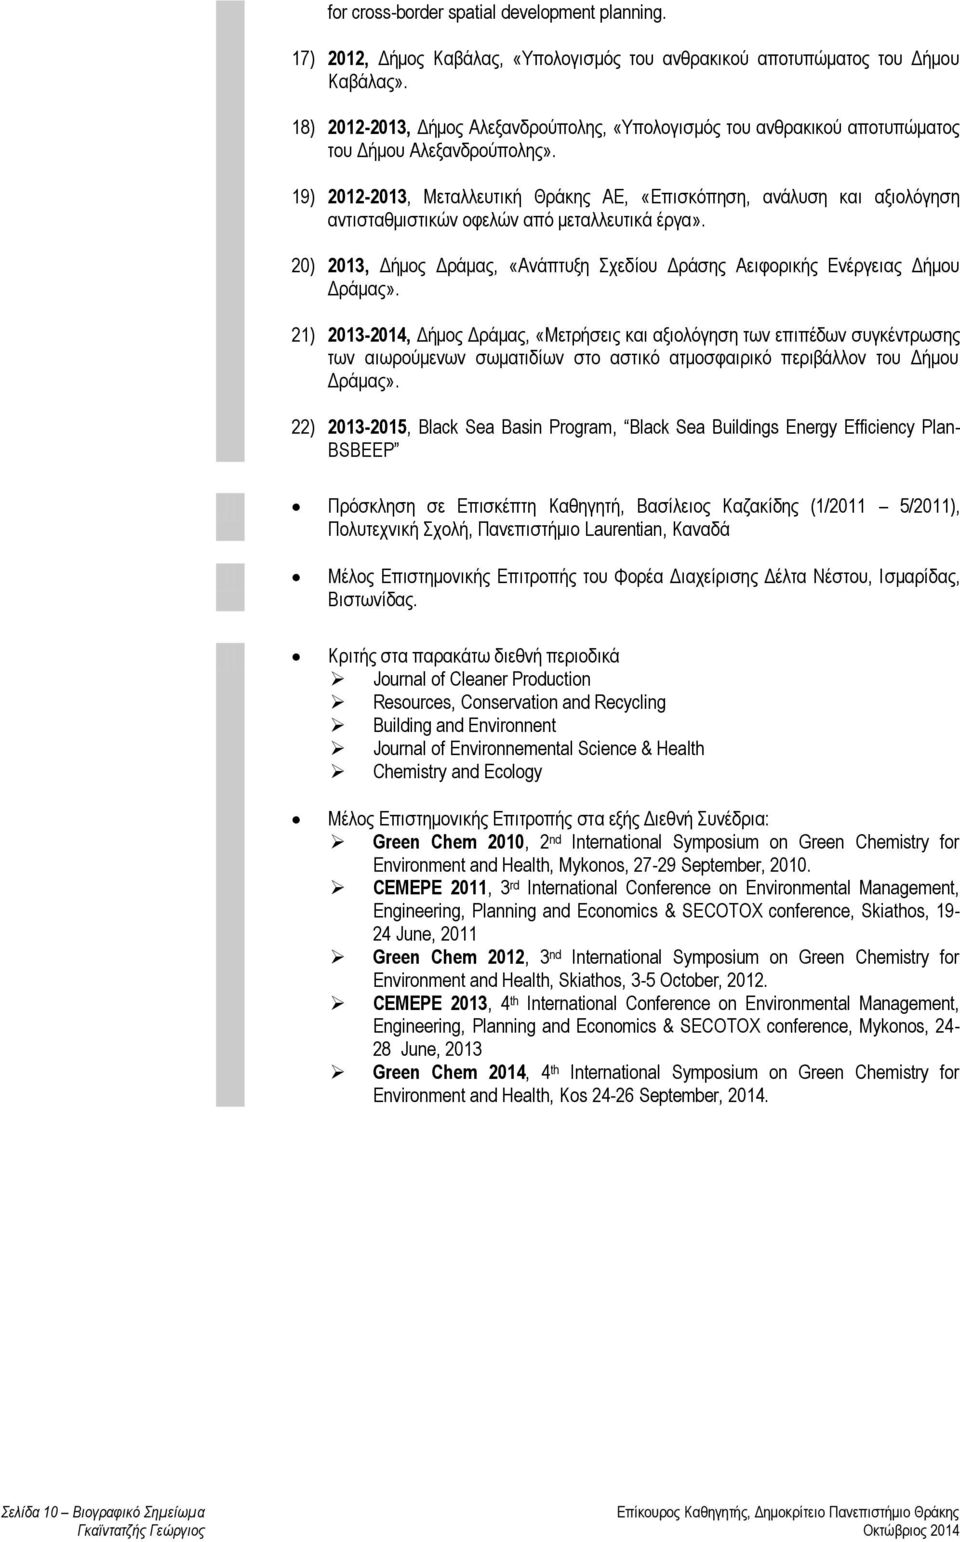 19) 2012-2013, Μεταλλευτική Θράκης ΑΕ, «Επισκόπηση, ανάλυση και αξιολόγηση αντισταθμιστικών οφελών από μεταλλευτικά έργα».